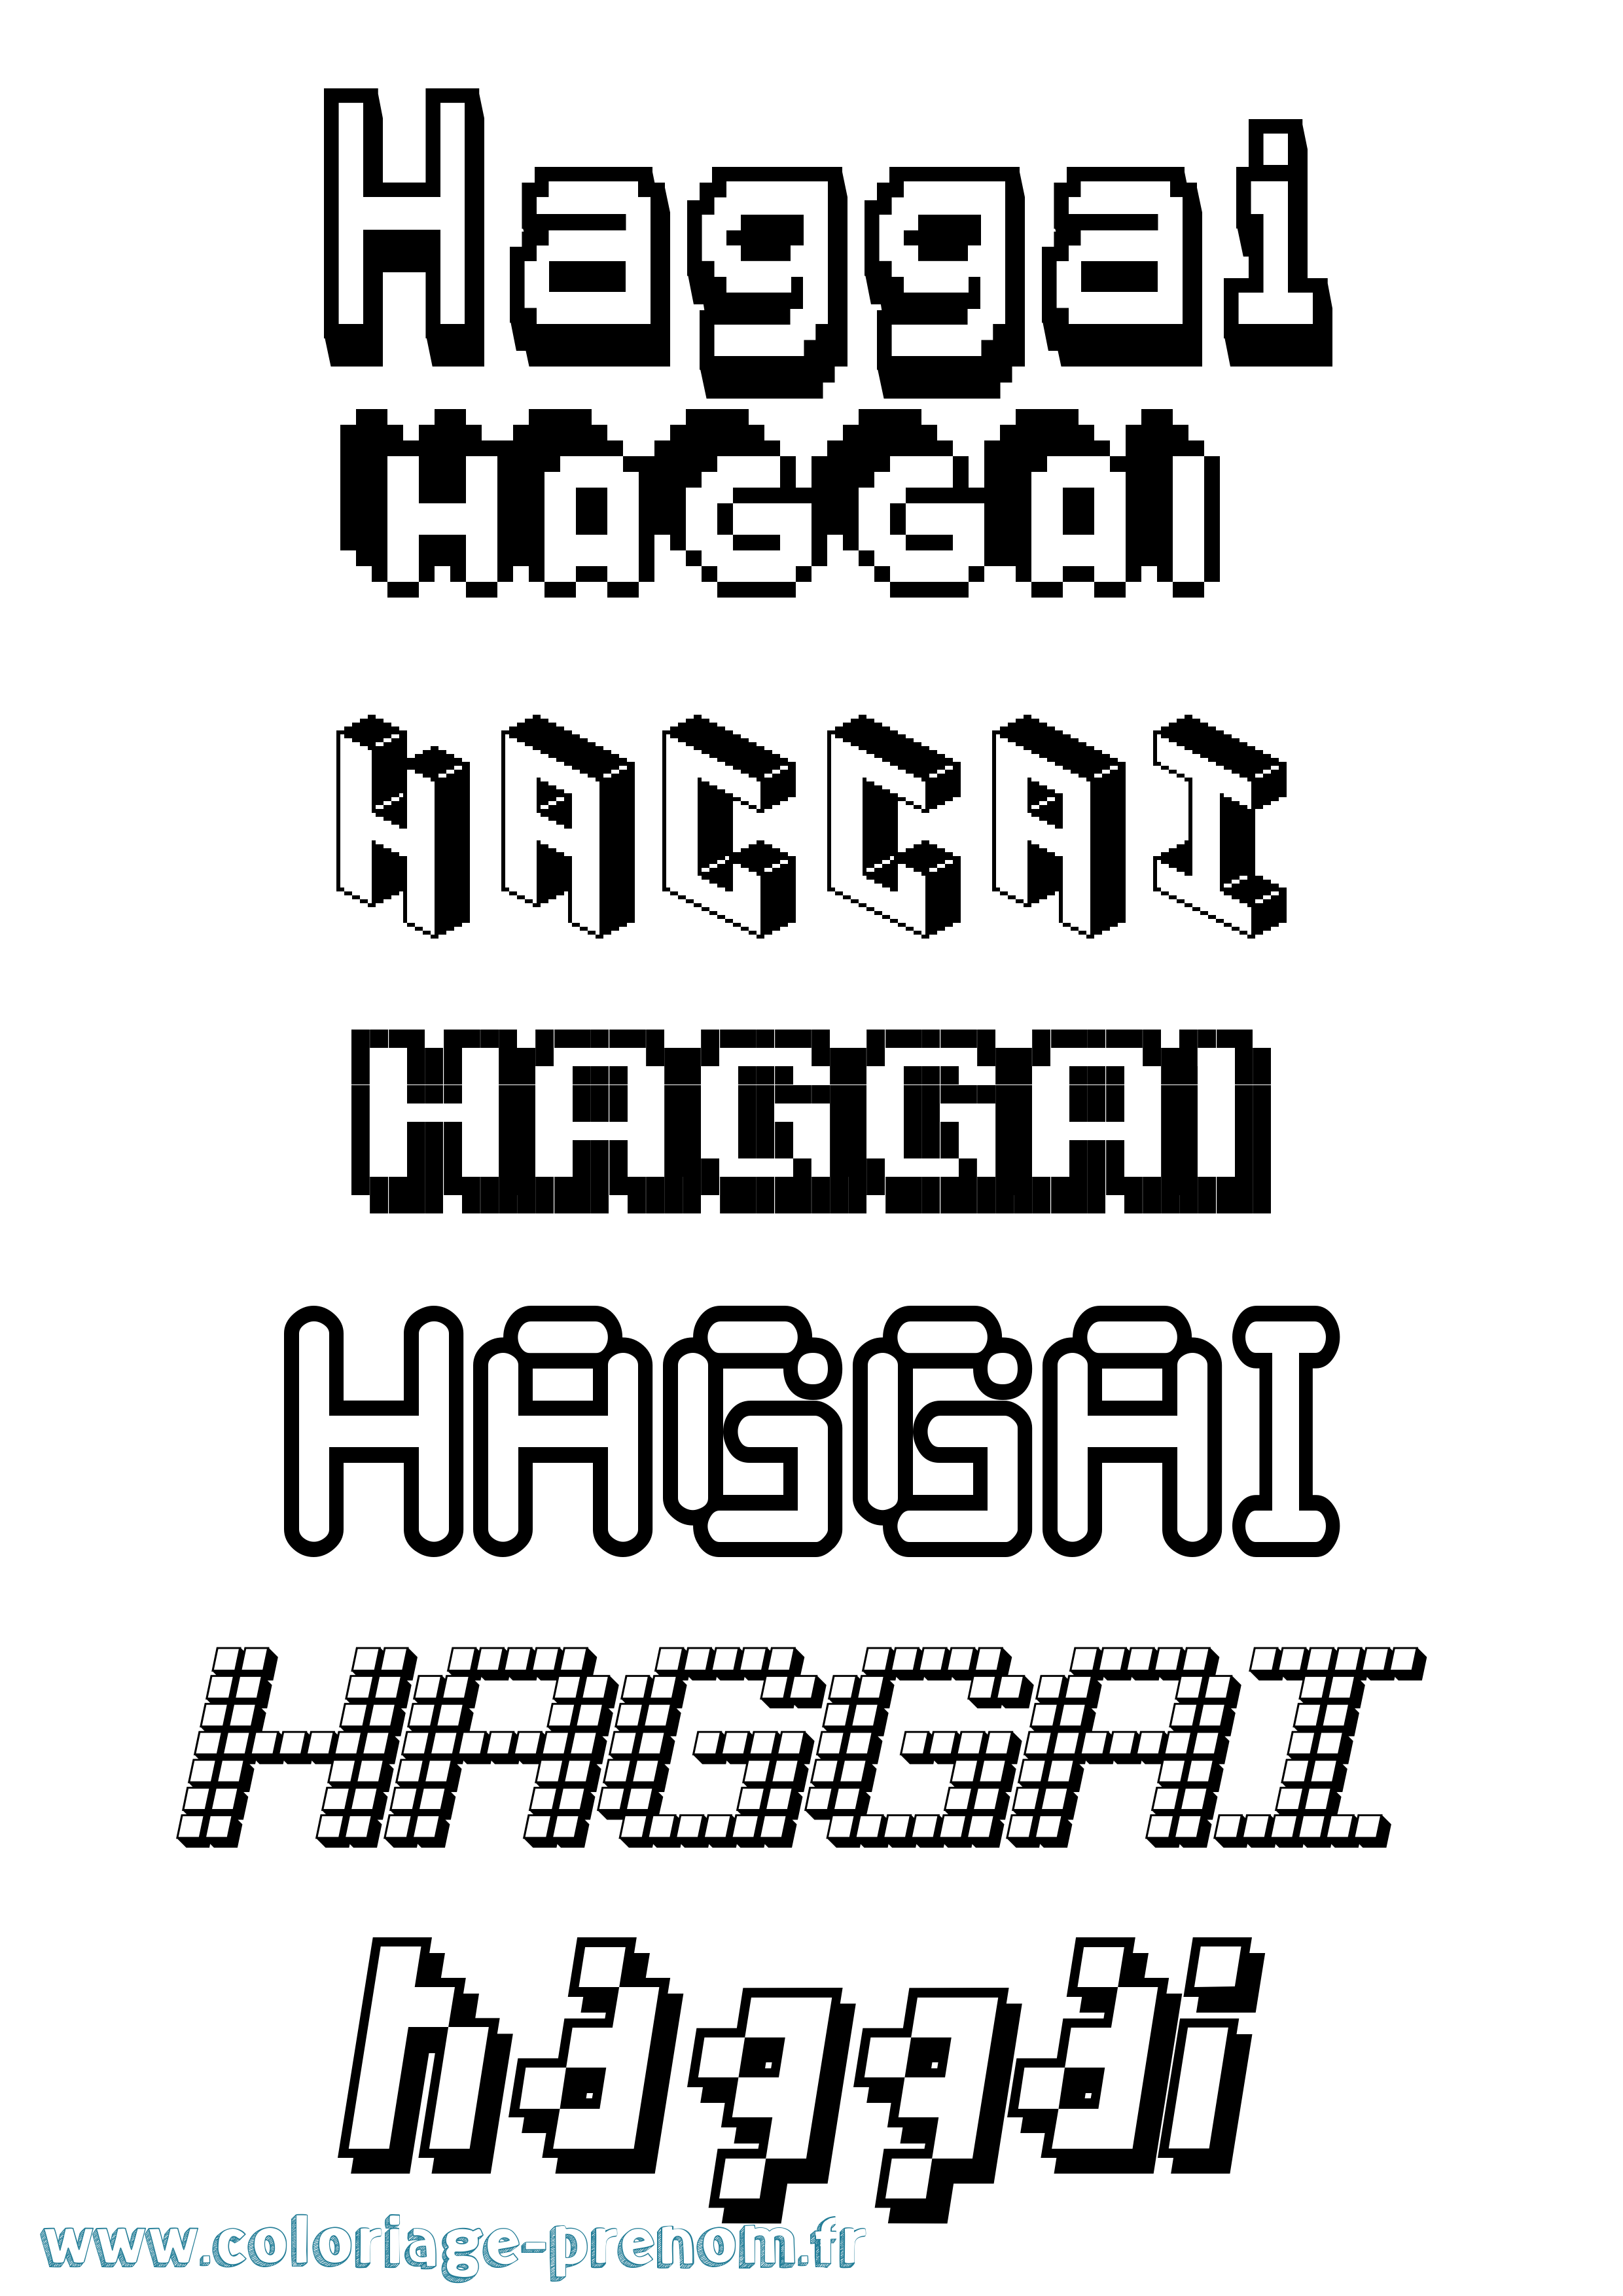 Coloriage prénom Haggai Pixel